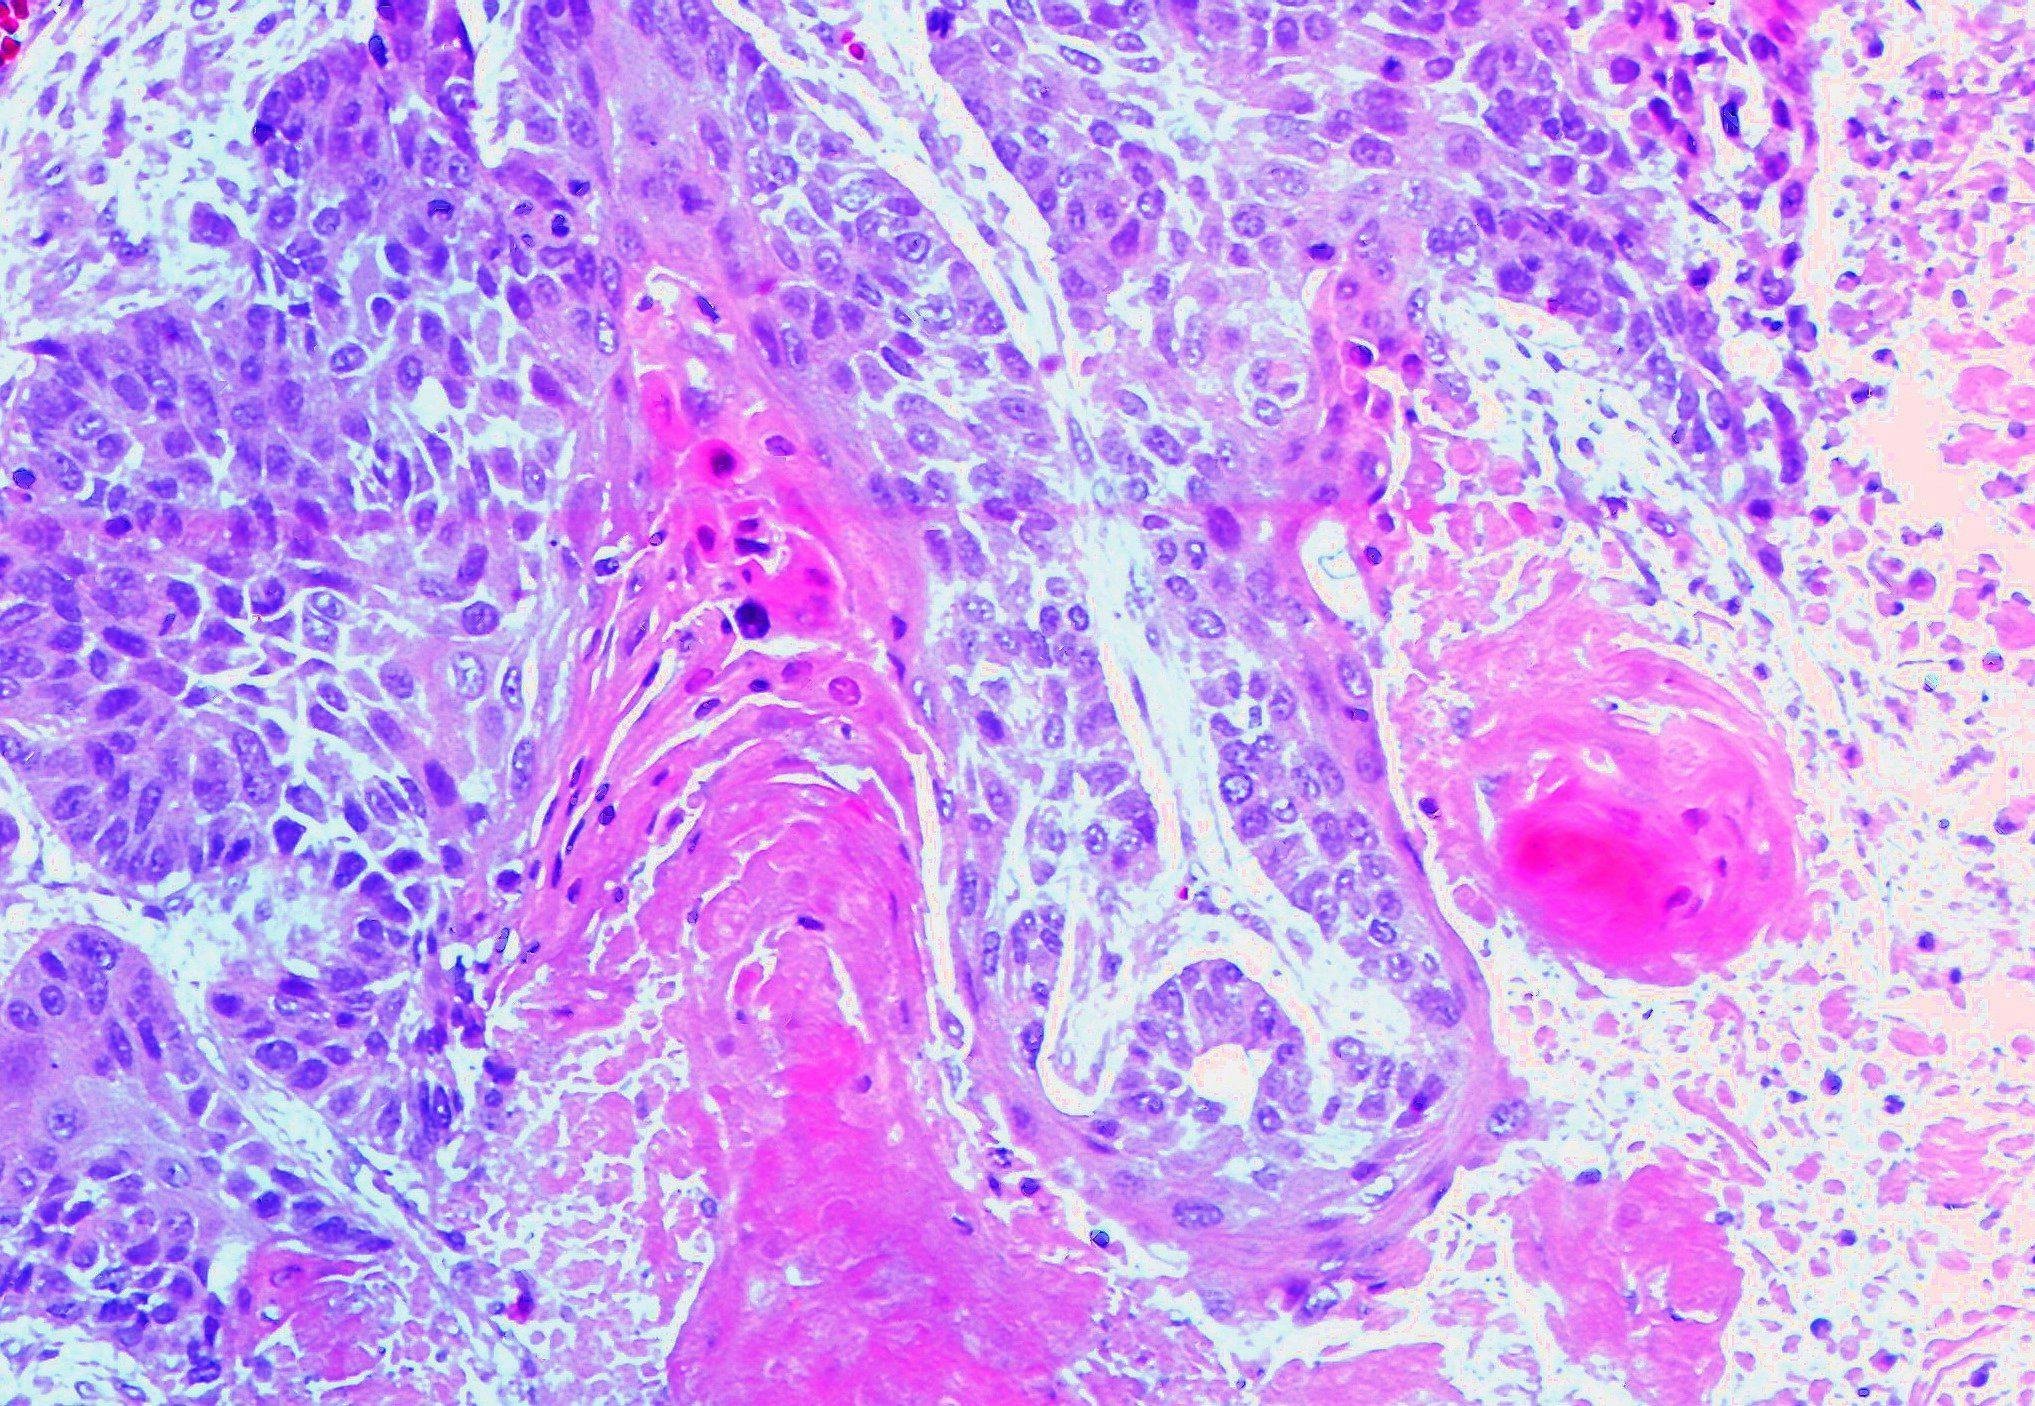 Squamous cell carcinoma

Image courtesy of Dr. Yale Rosen Atlas of Pulmonary Pathology